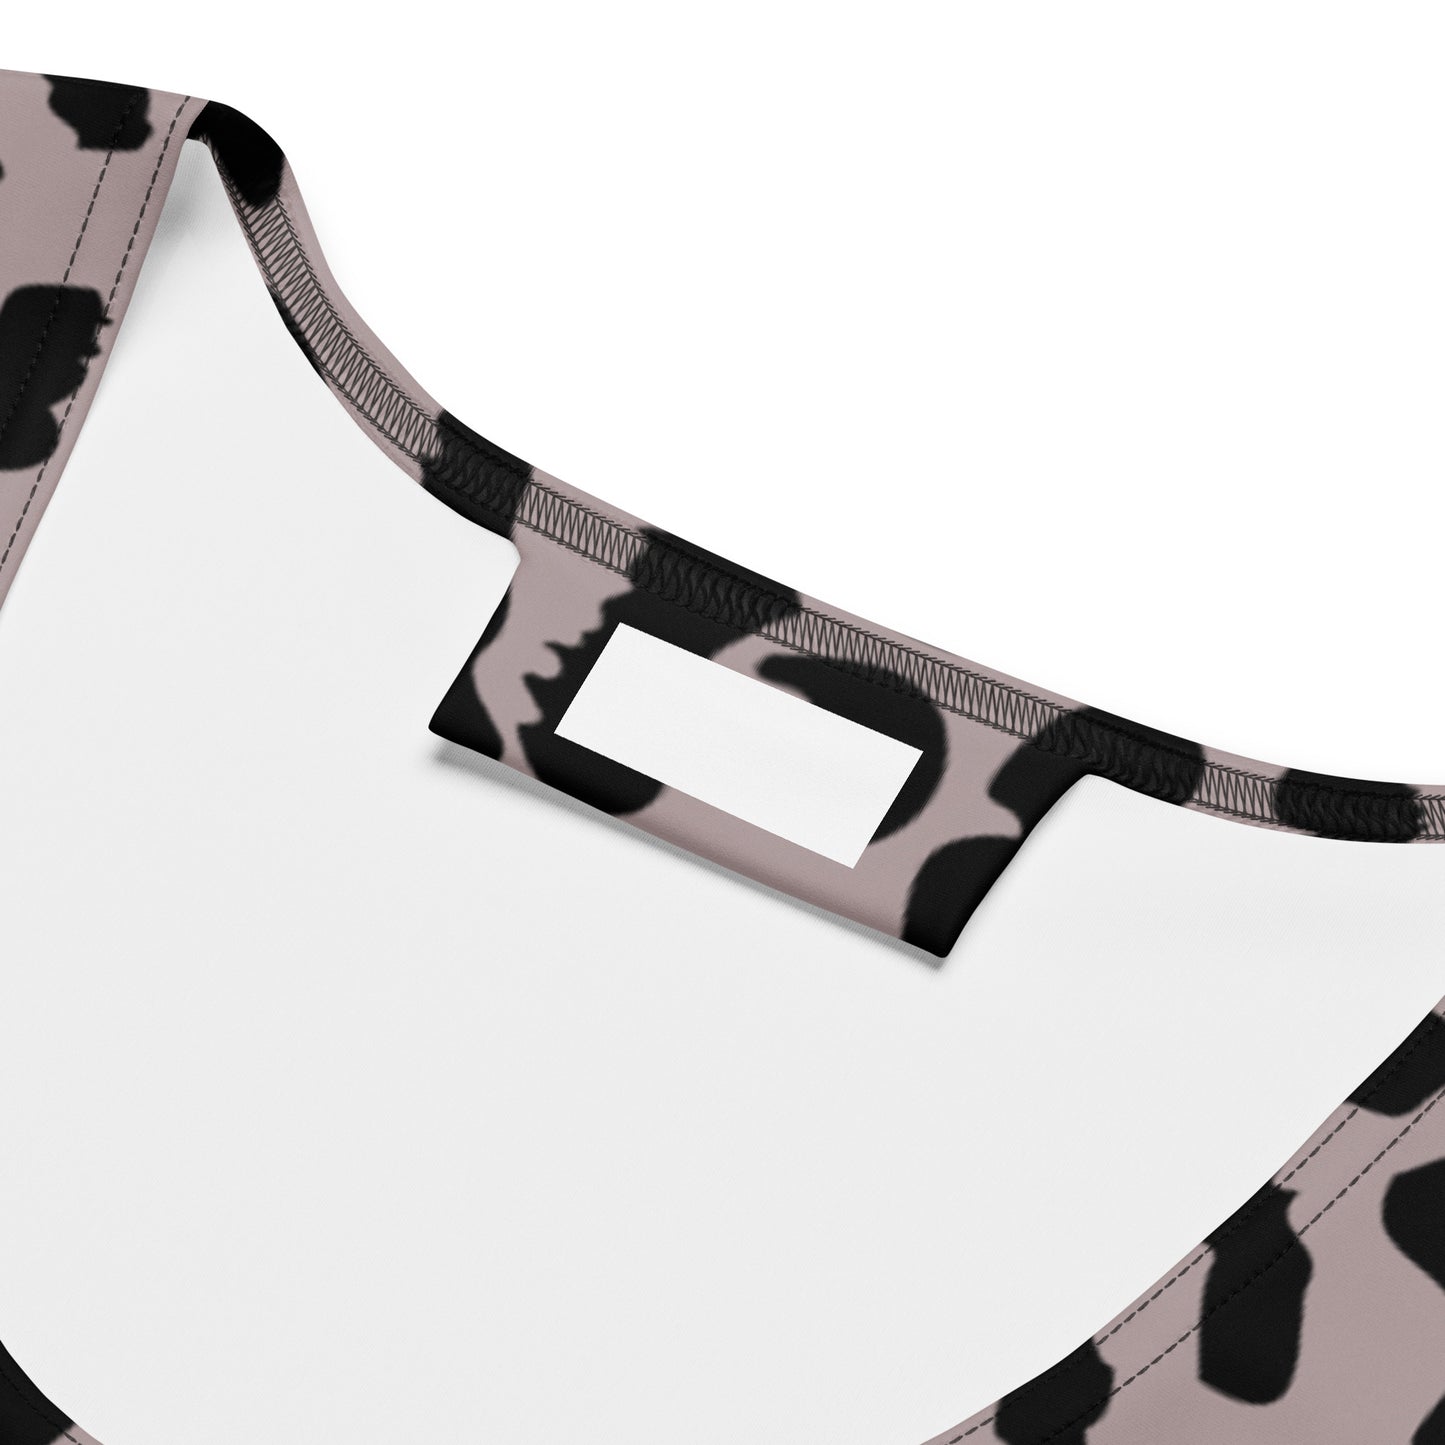 Leopard Dress - Mauve | Body Con Fit